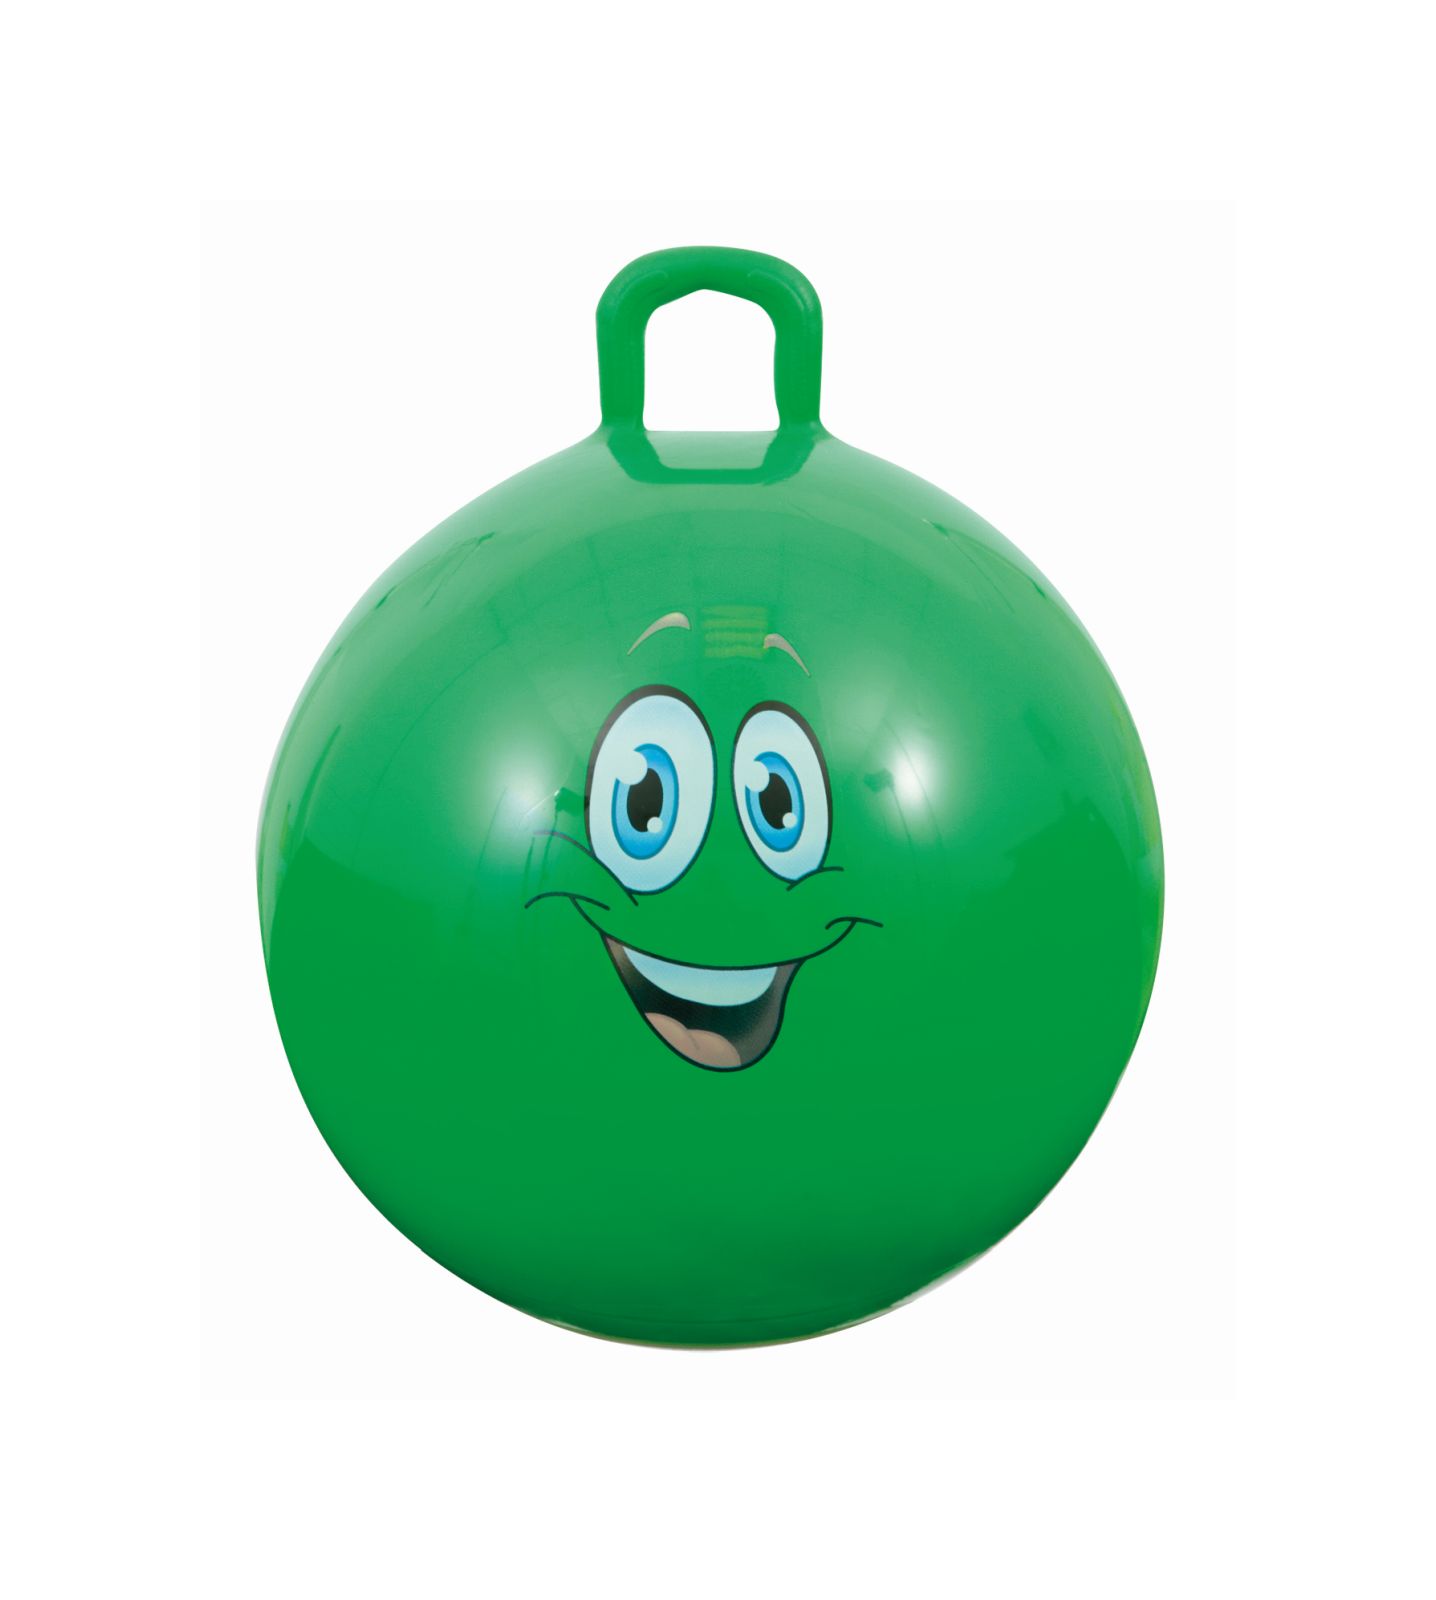 Bouncy ball - un divertimento illimitato per grandi e piccini! rimbalza, salta, gioca con la nostra palla adatta a qualsiasi esigenza: 60 cm di diametro, 4 colori disponibili e un manico comodo. - SUN&SPORT